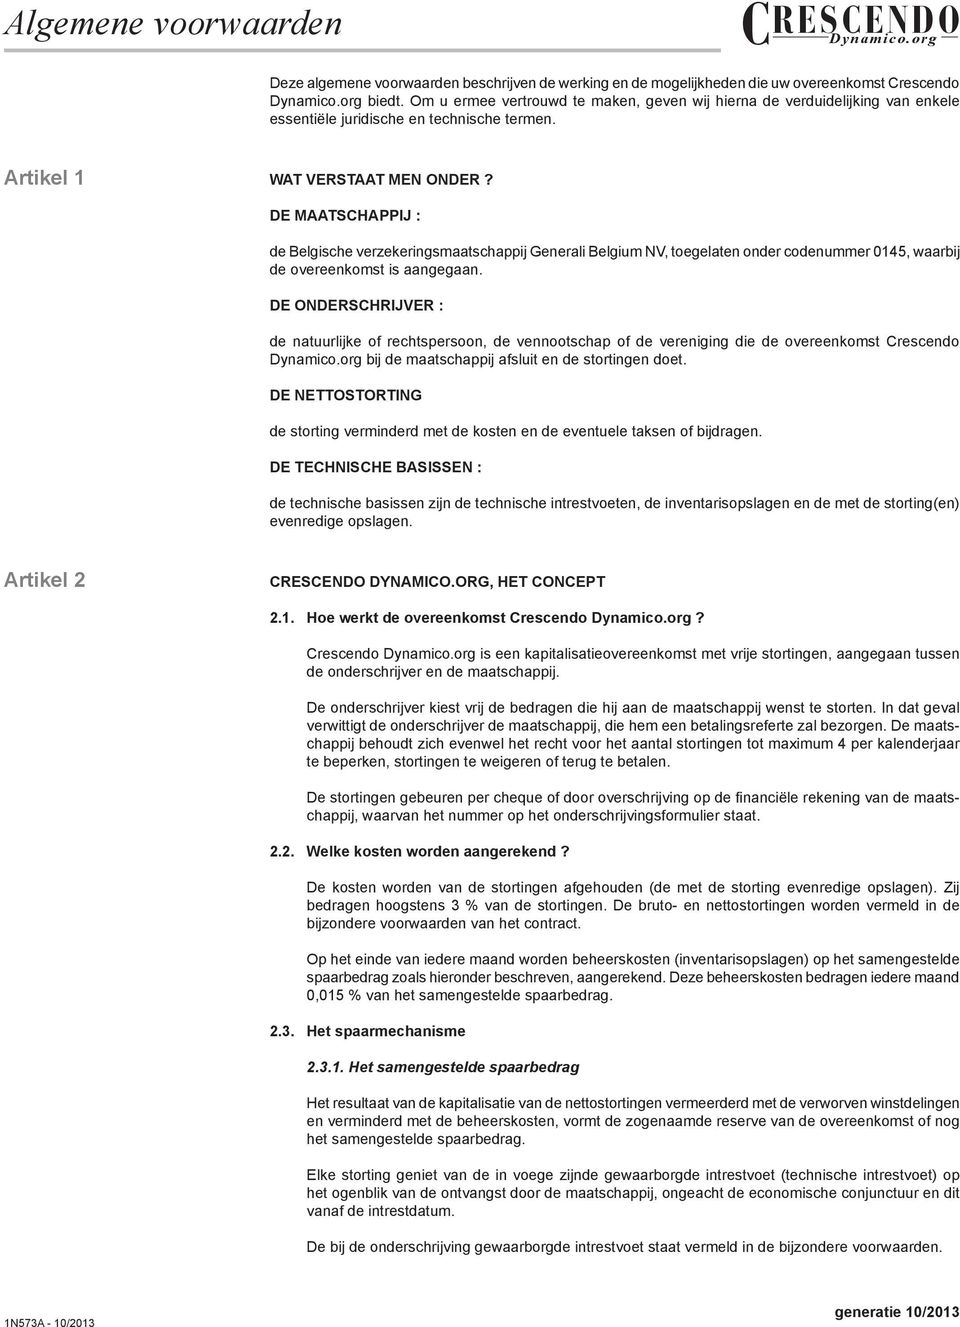 DE MAATSCHAPPIJ : de Belgische verzekeringsmaatschappij Generali Belgium NV, toegelaten onder codenummer 0145, waarbij de overeenkomst is aangegaan.